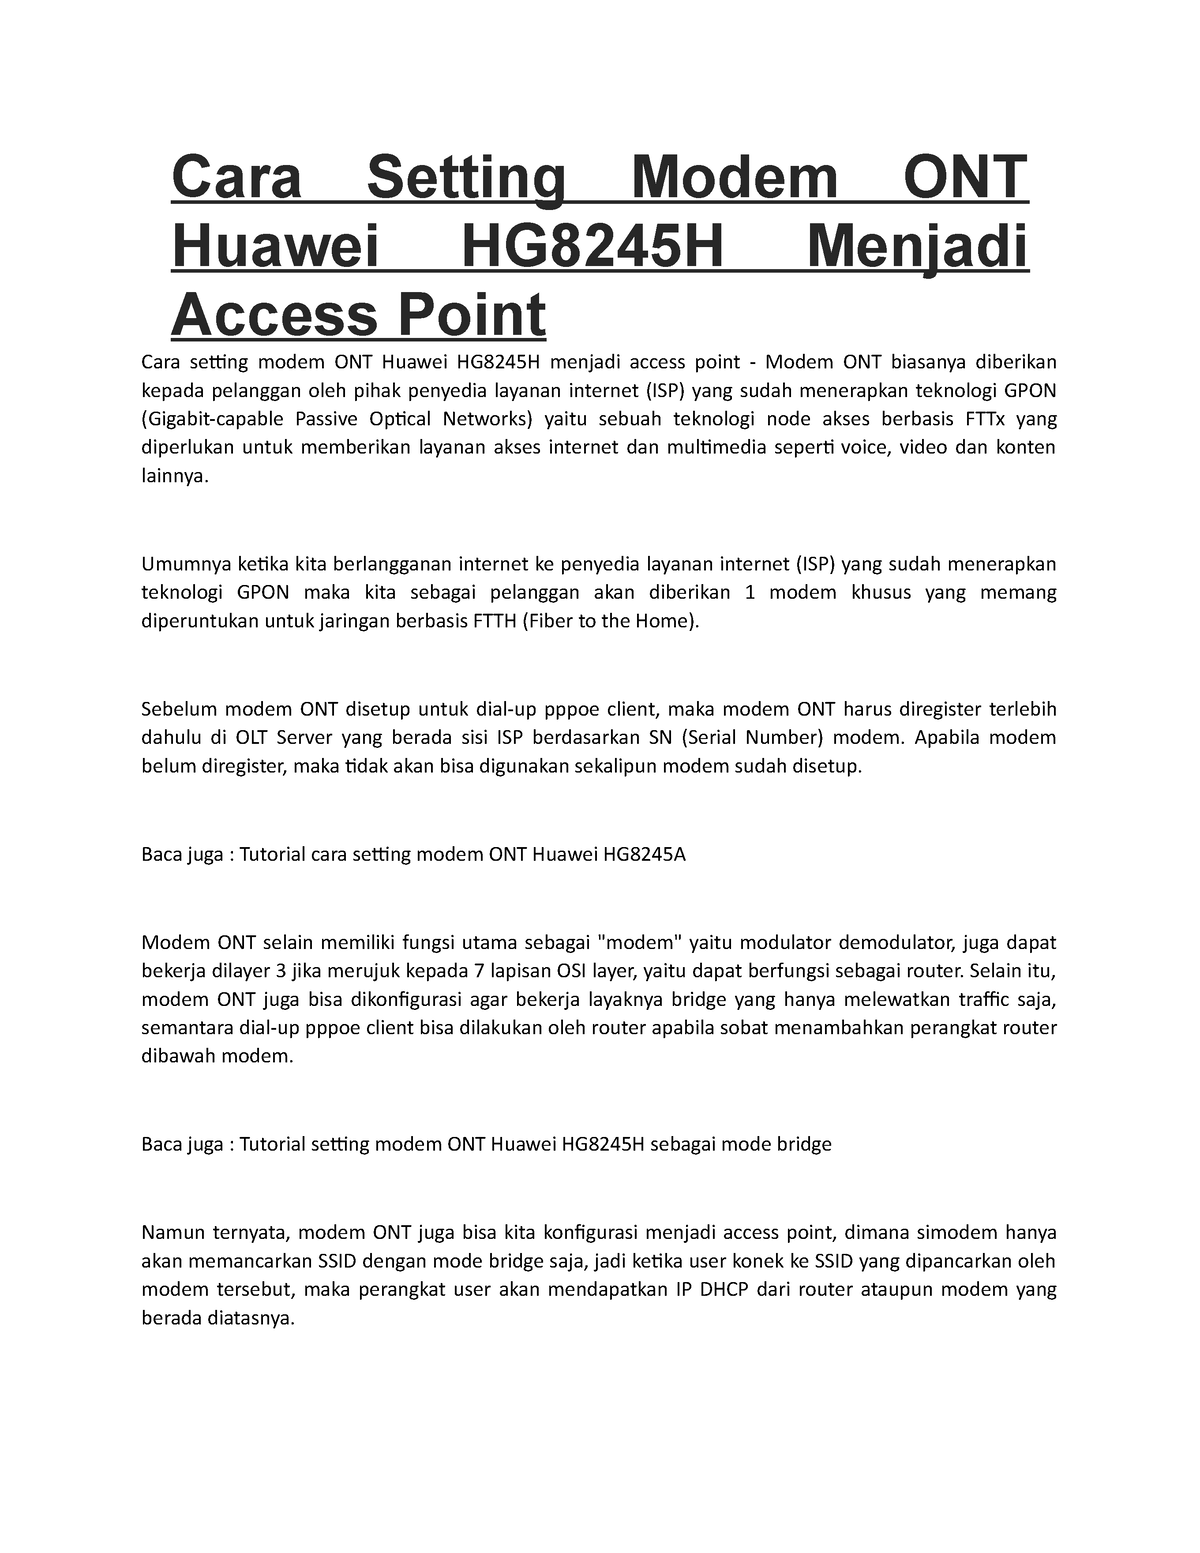 Cara Setting Modem Ont Huawei Hg8245h Menjadi Access Point Cara Setting Modem Ont Huawei 9129